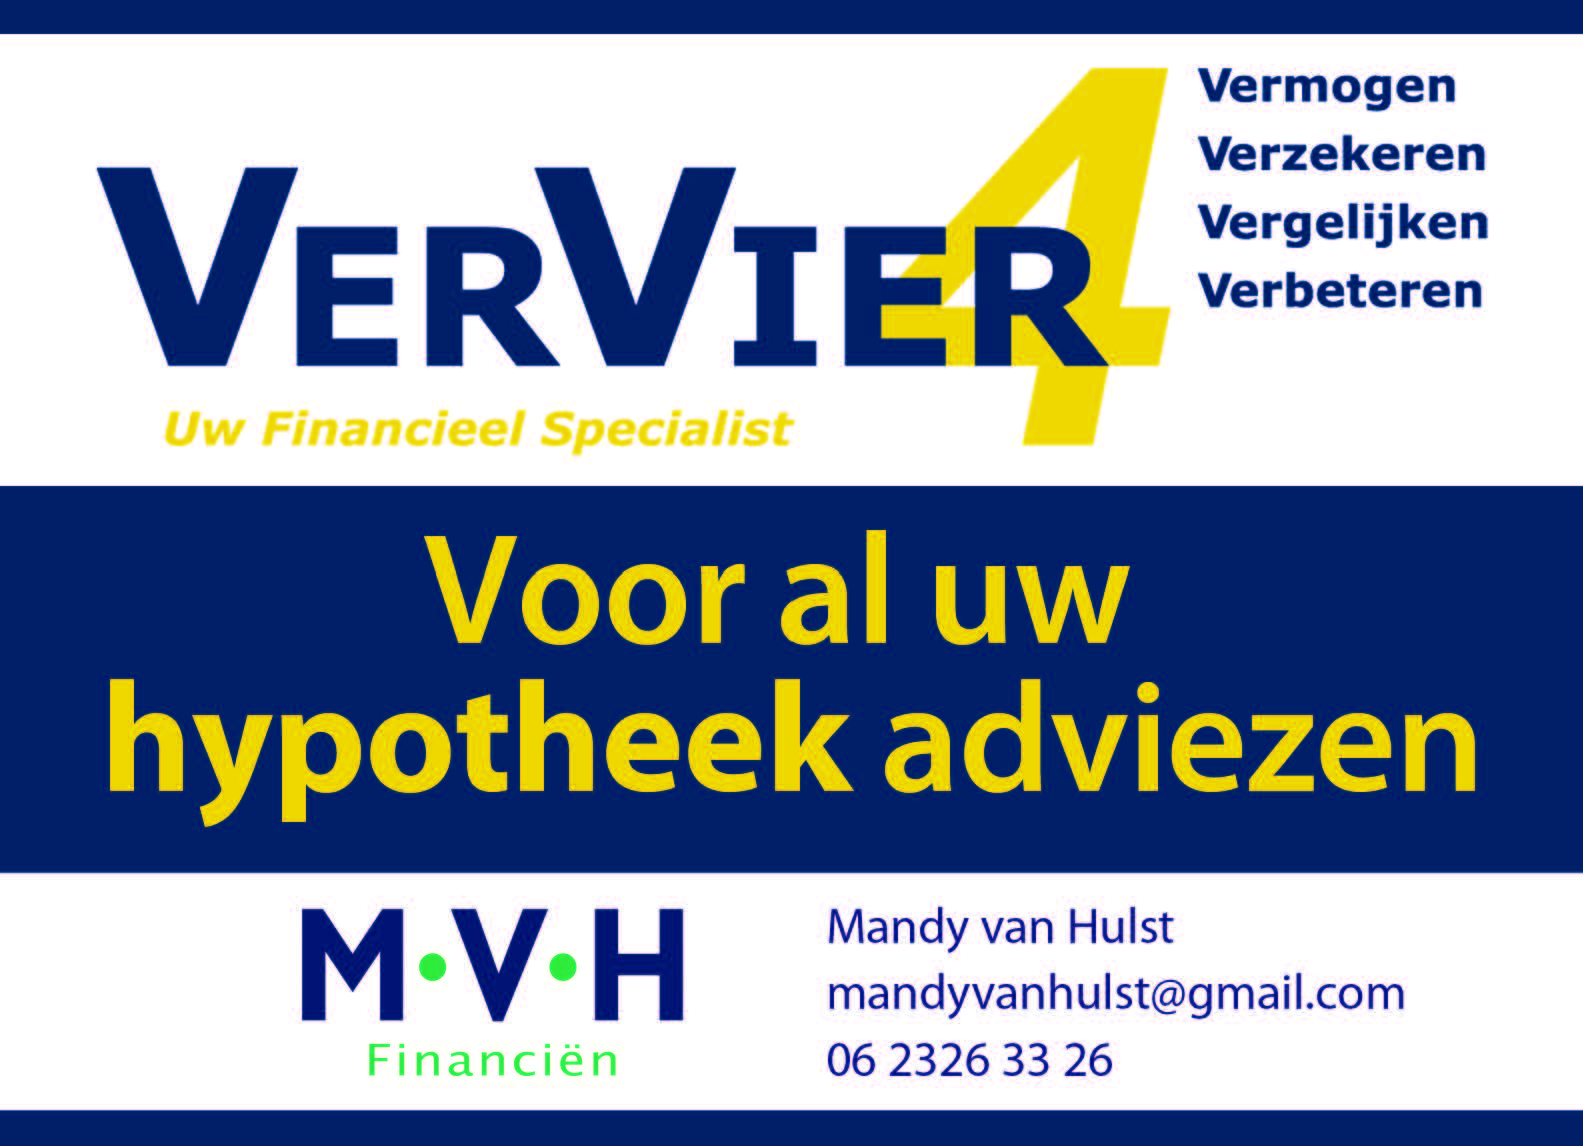 MVH Financien